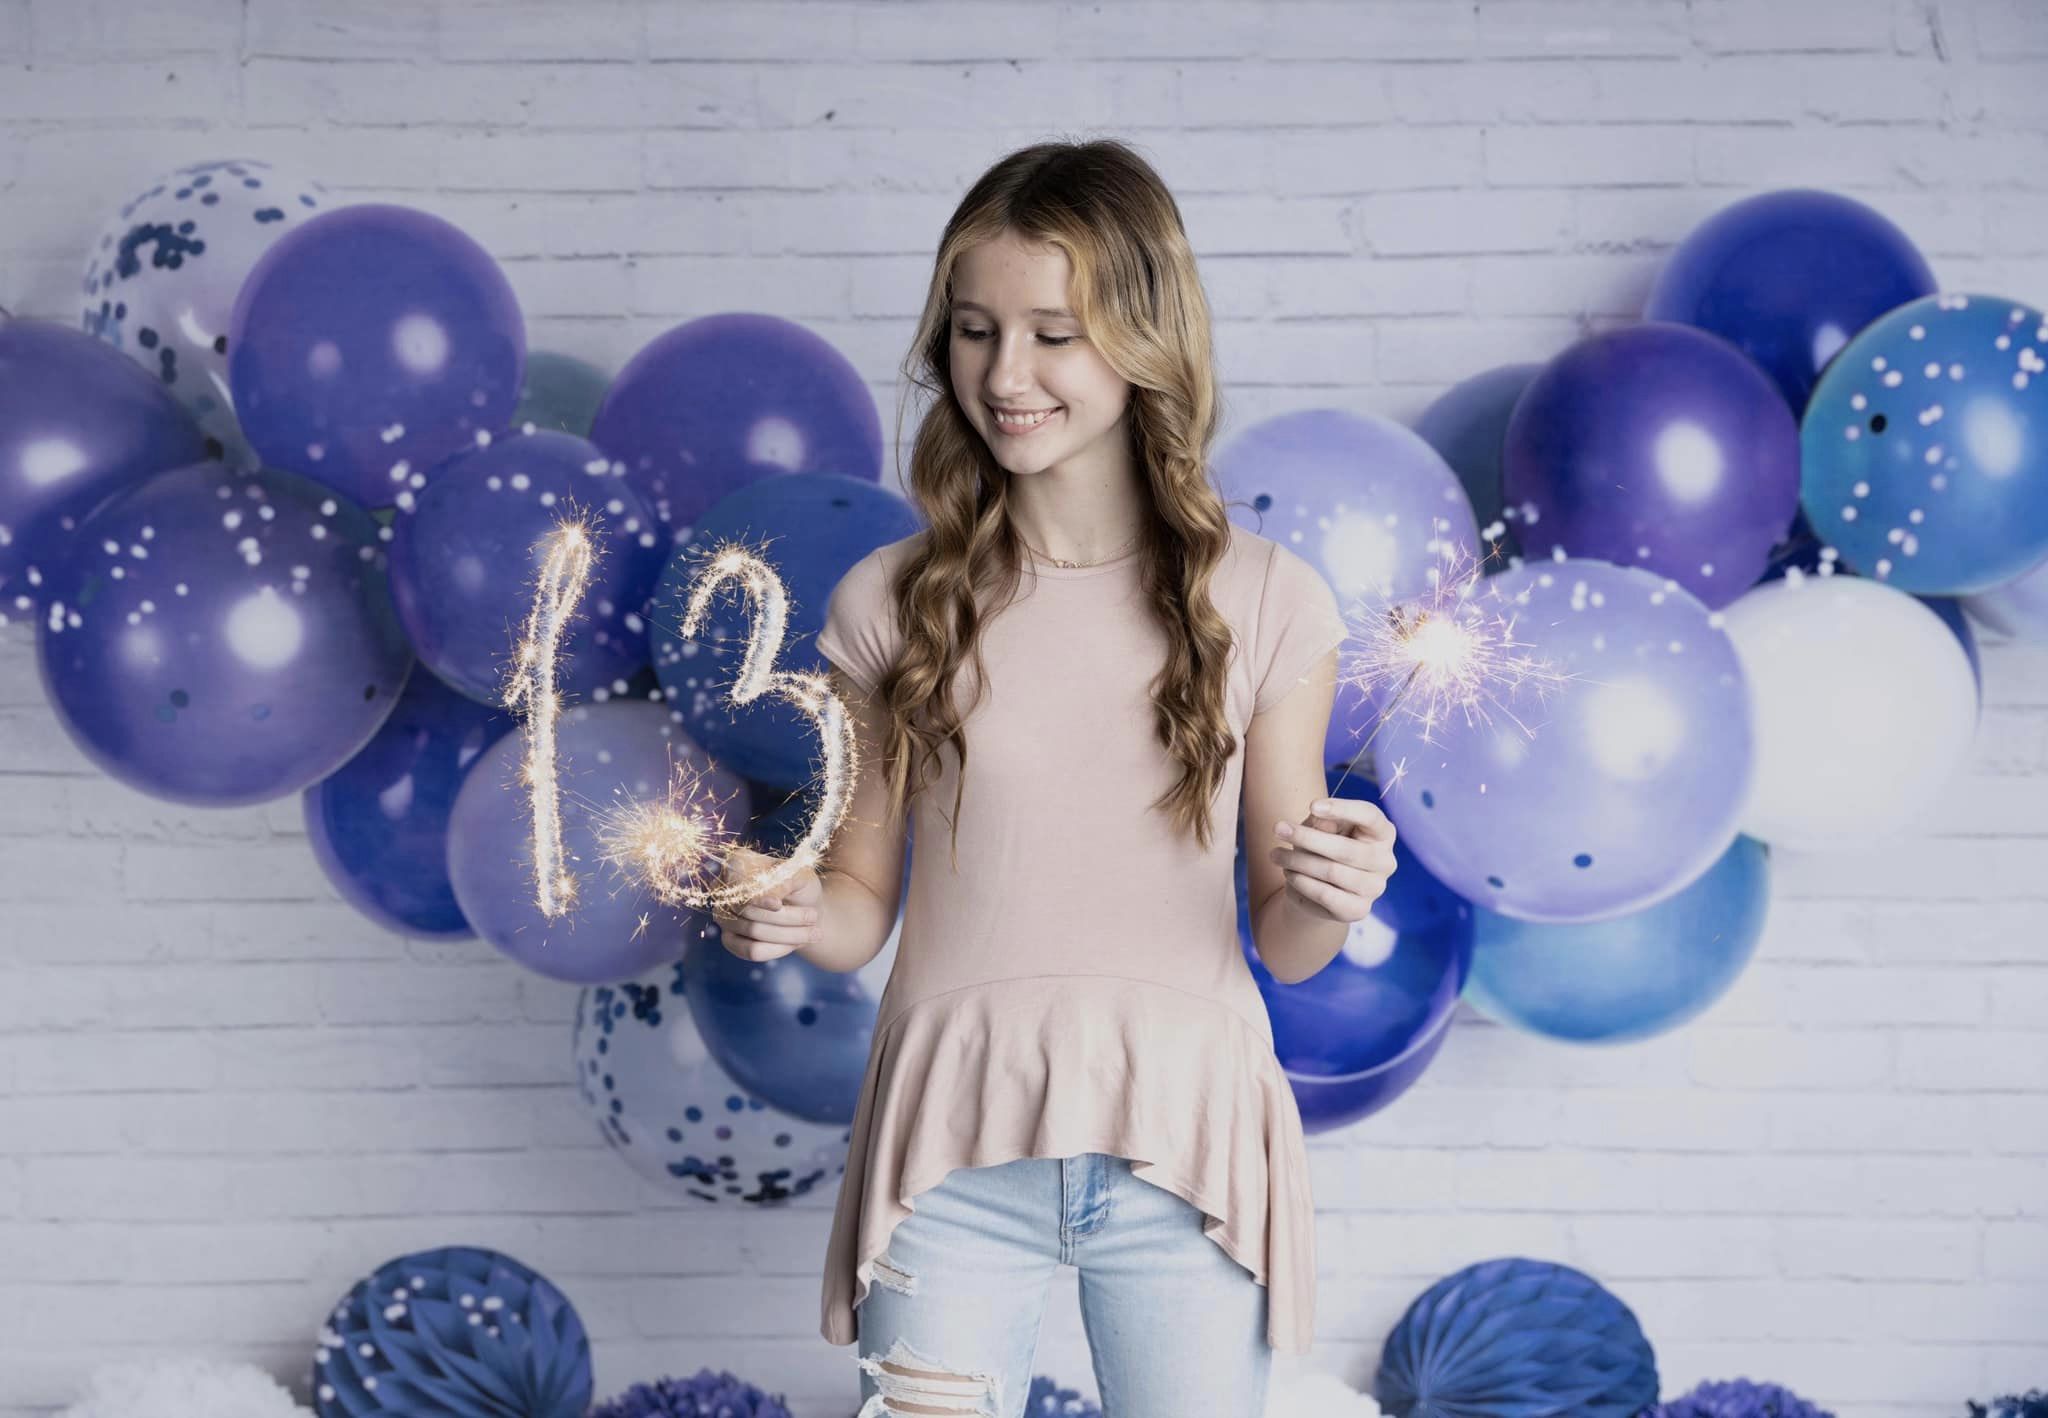 Kate Guirlande Ballons Bleu Anniversaire Toile de fond conçue par Mandy Ringe